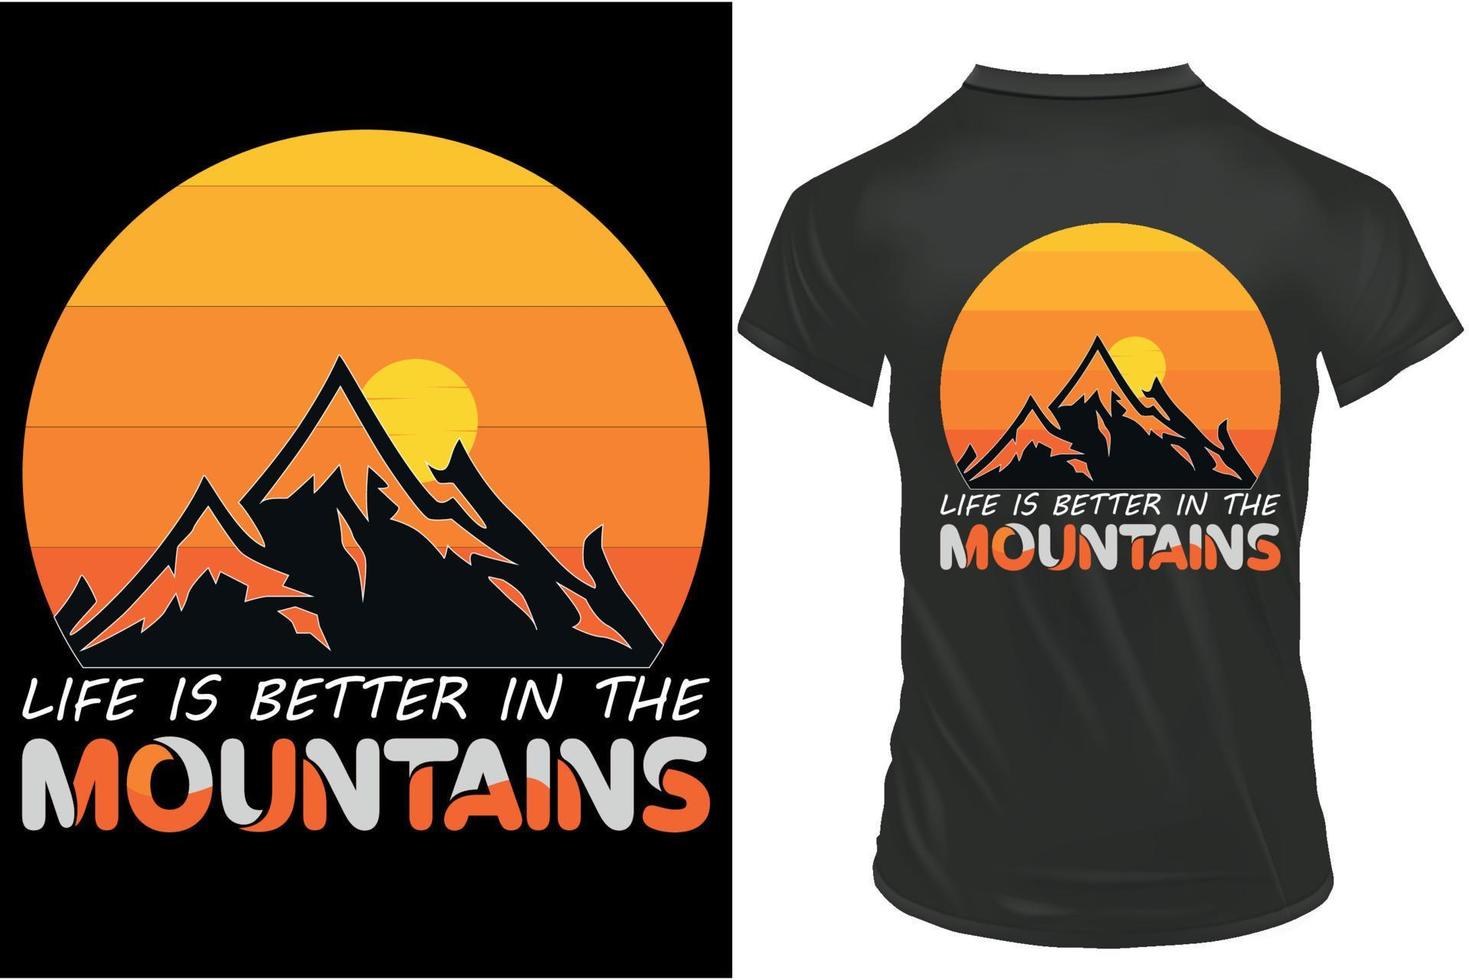 la vie est mieux dans le montagnes rétro T-shirt conception, Montagne t chemise conception, rétro ancien conception. vecteur